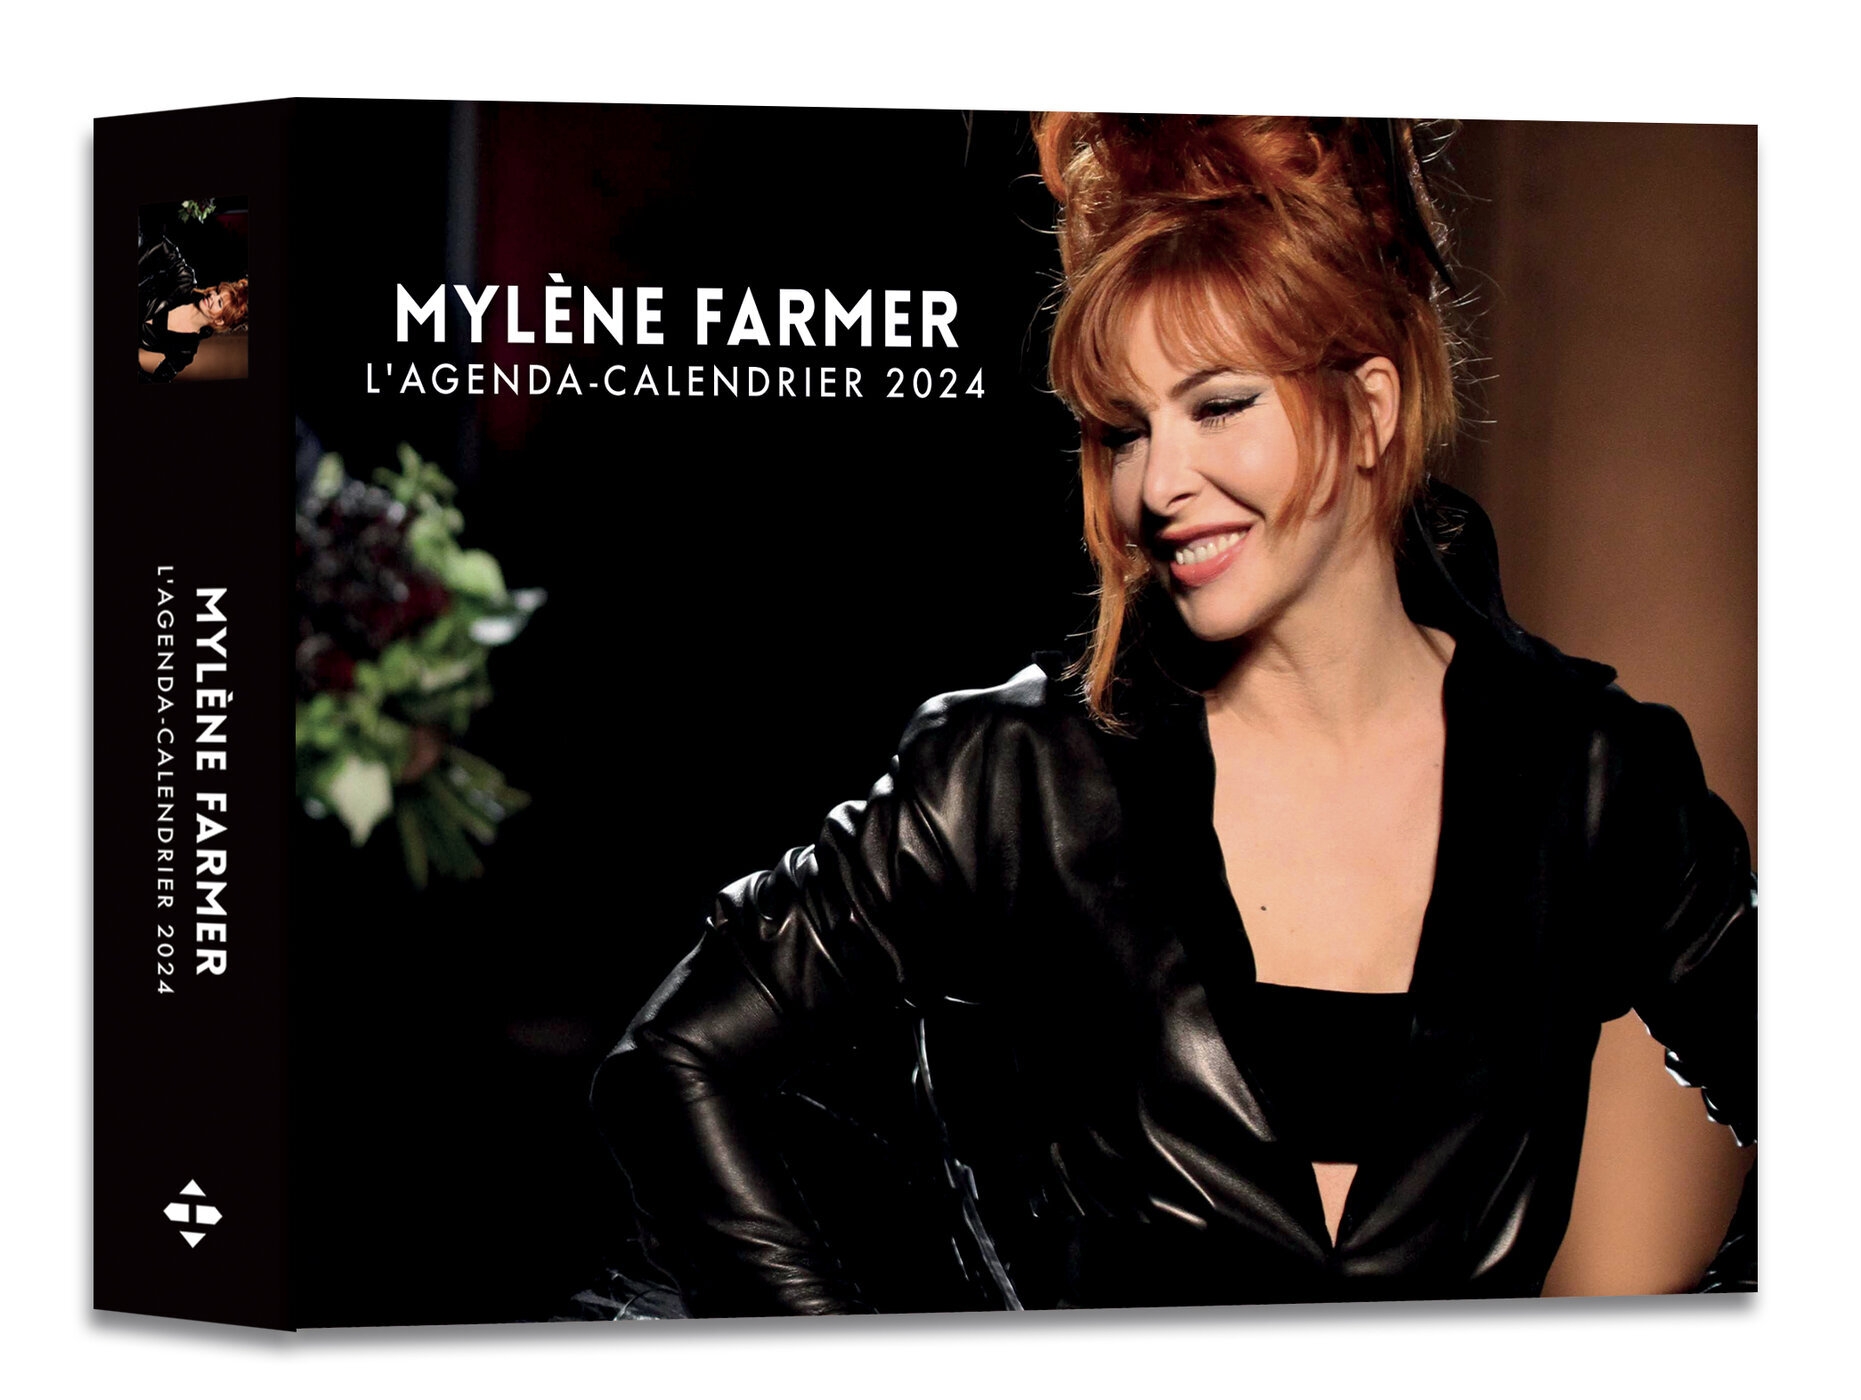 Agenda Calendrier Mylène Farmer 2024 Hugo Publishing